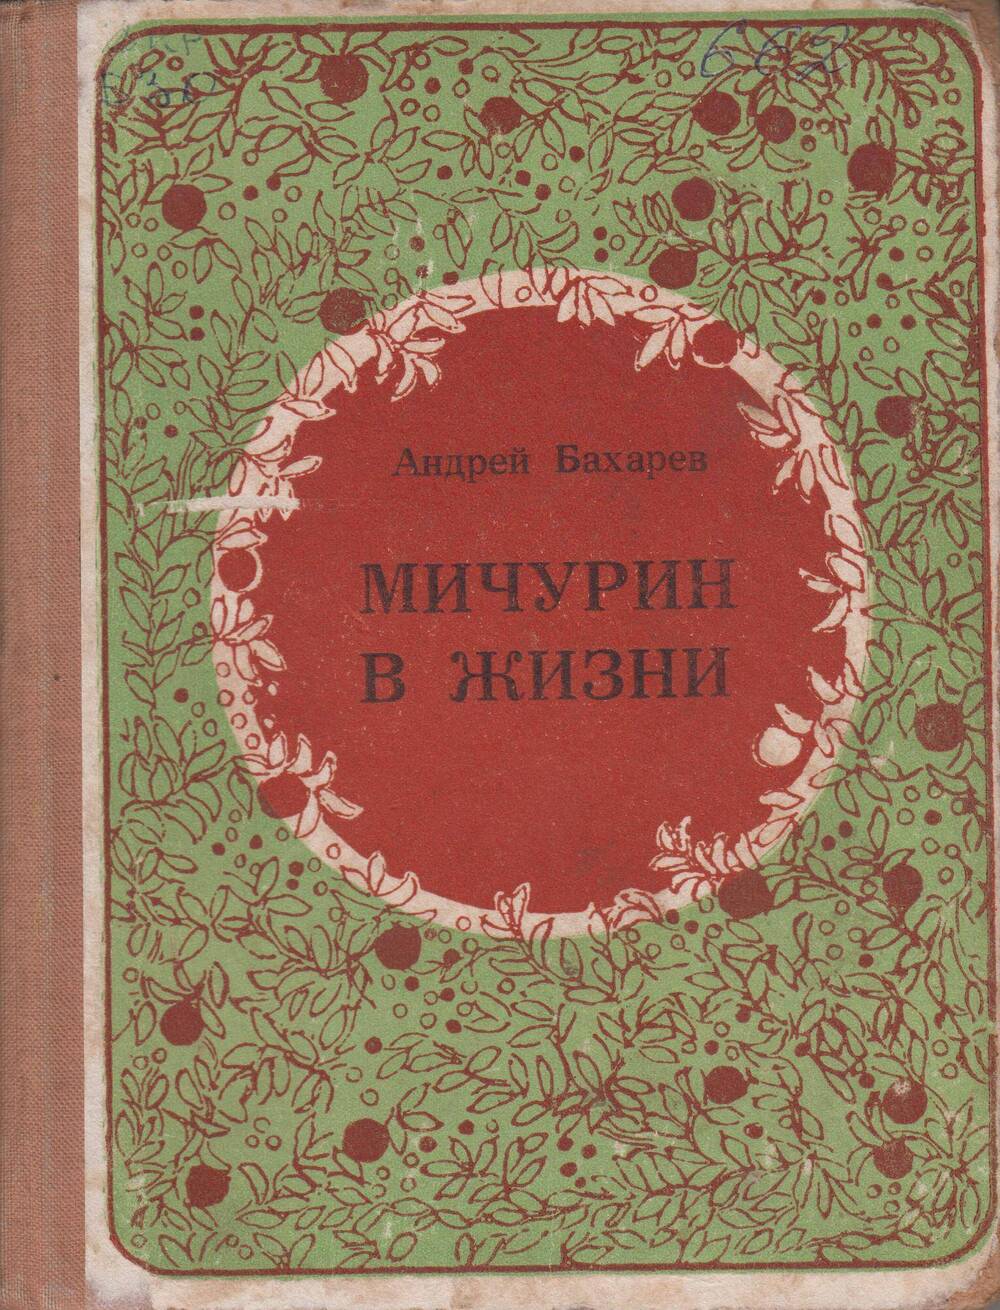 Мичурин в жизни - М., 1974, 224 с.